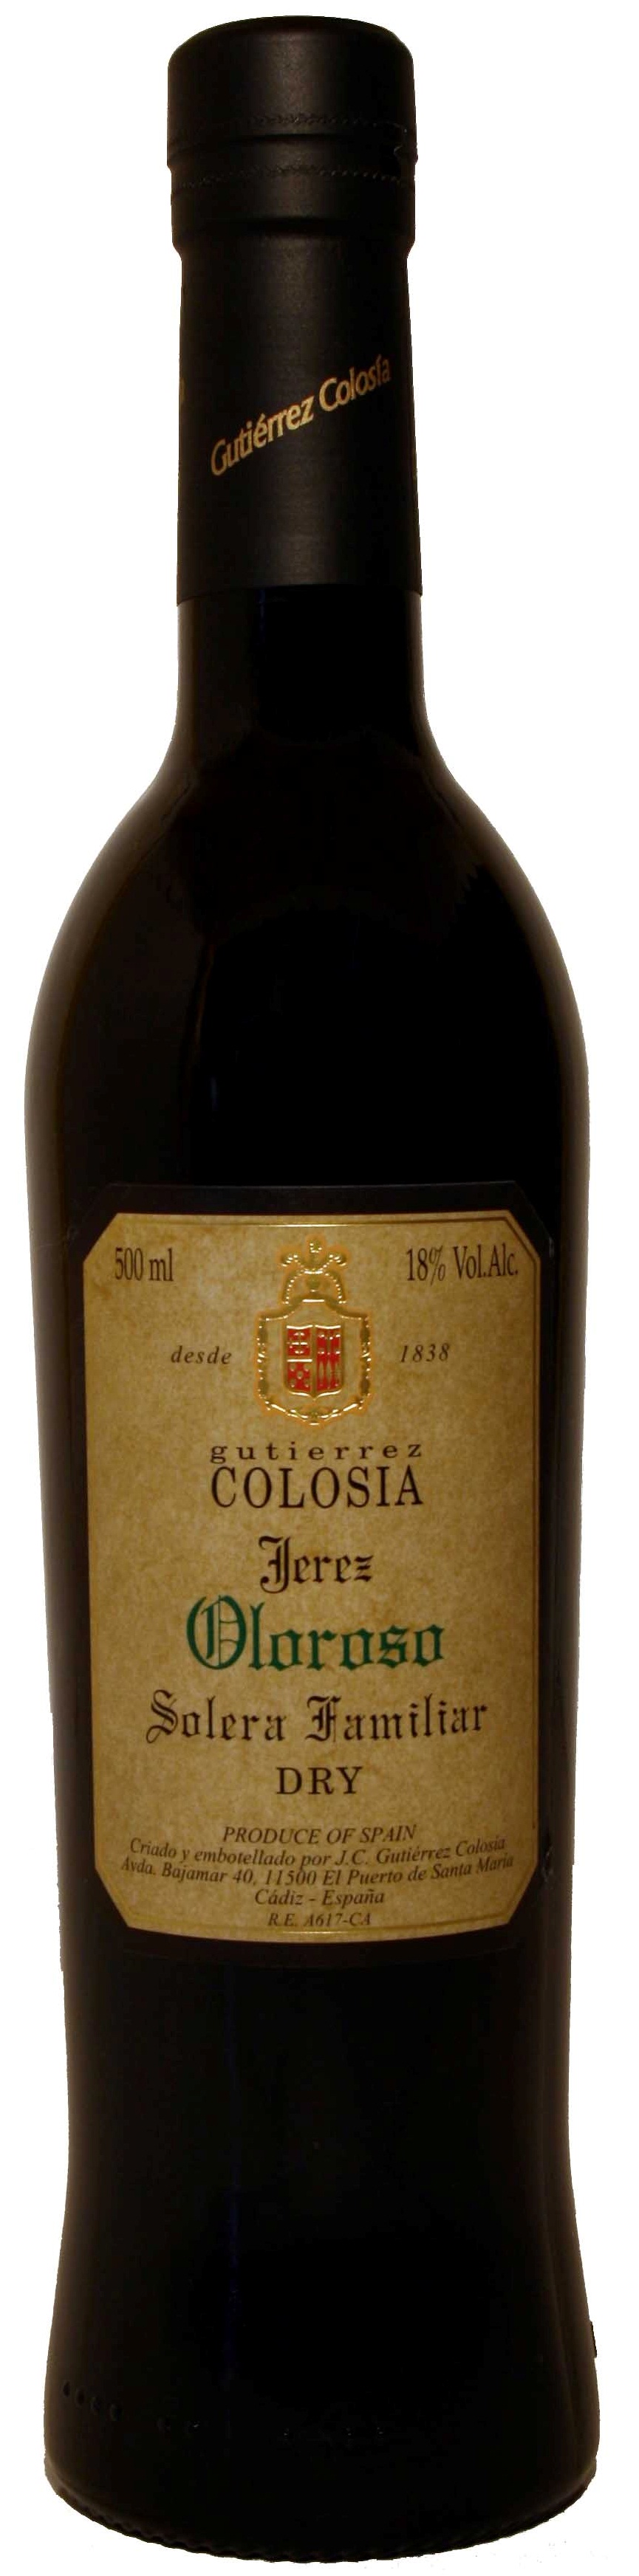 Image of Wine bottle Colosía Solera Familiar Oloroso